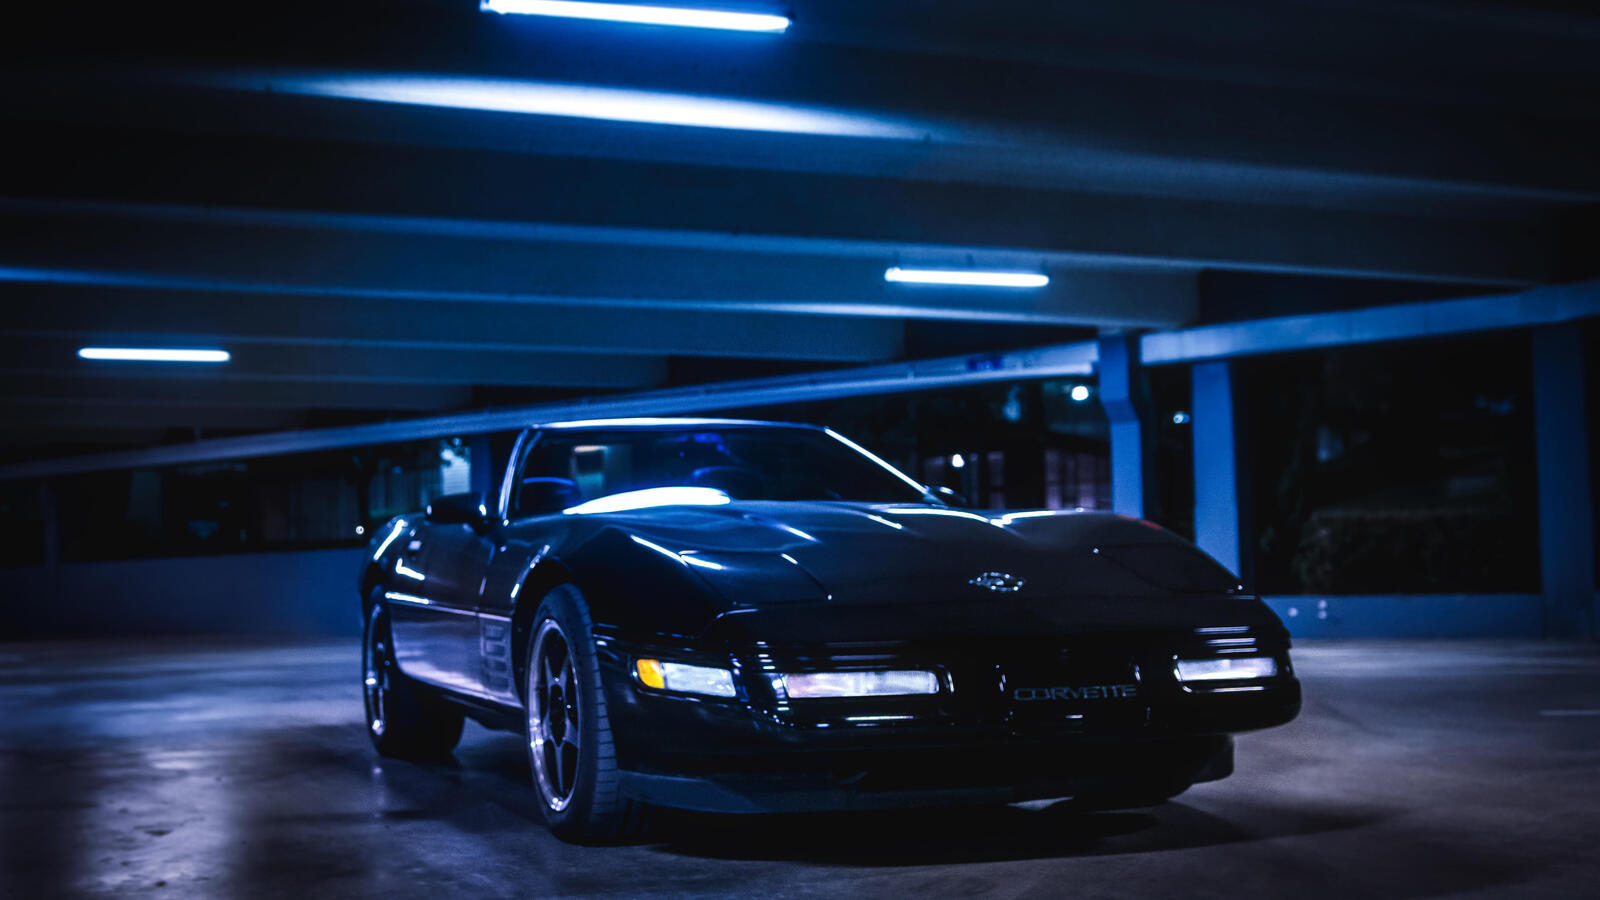 Free photo Corvette in an underground parking garage